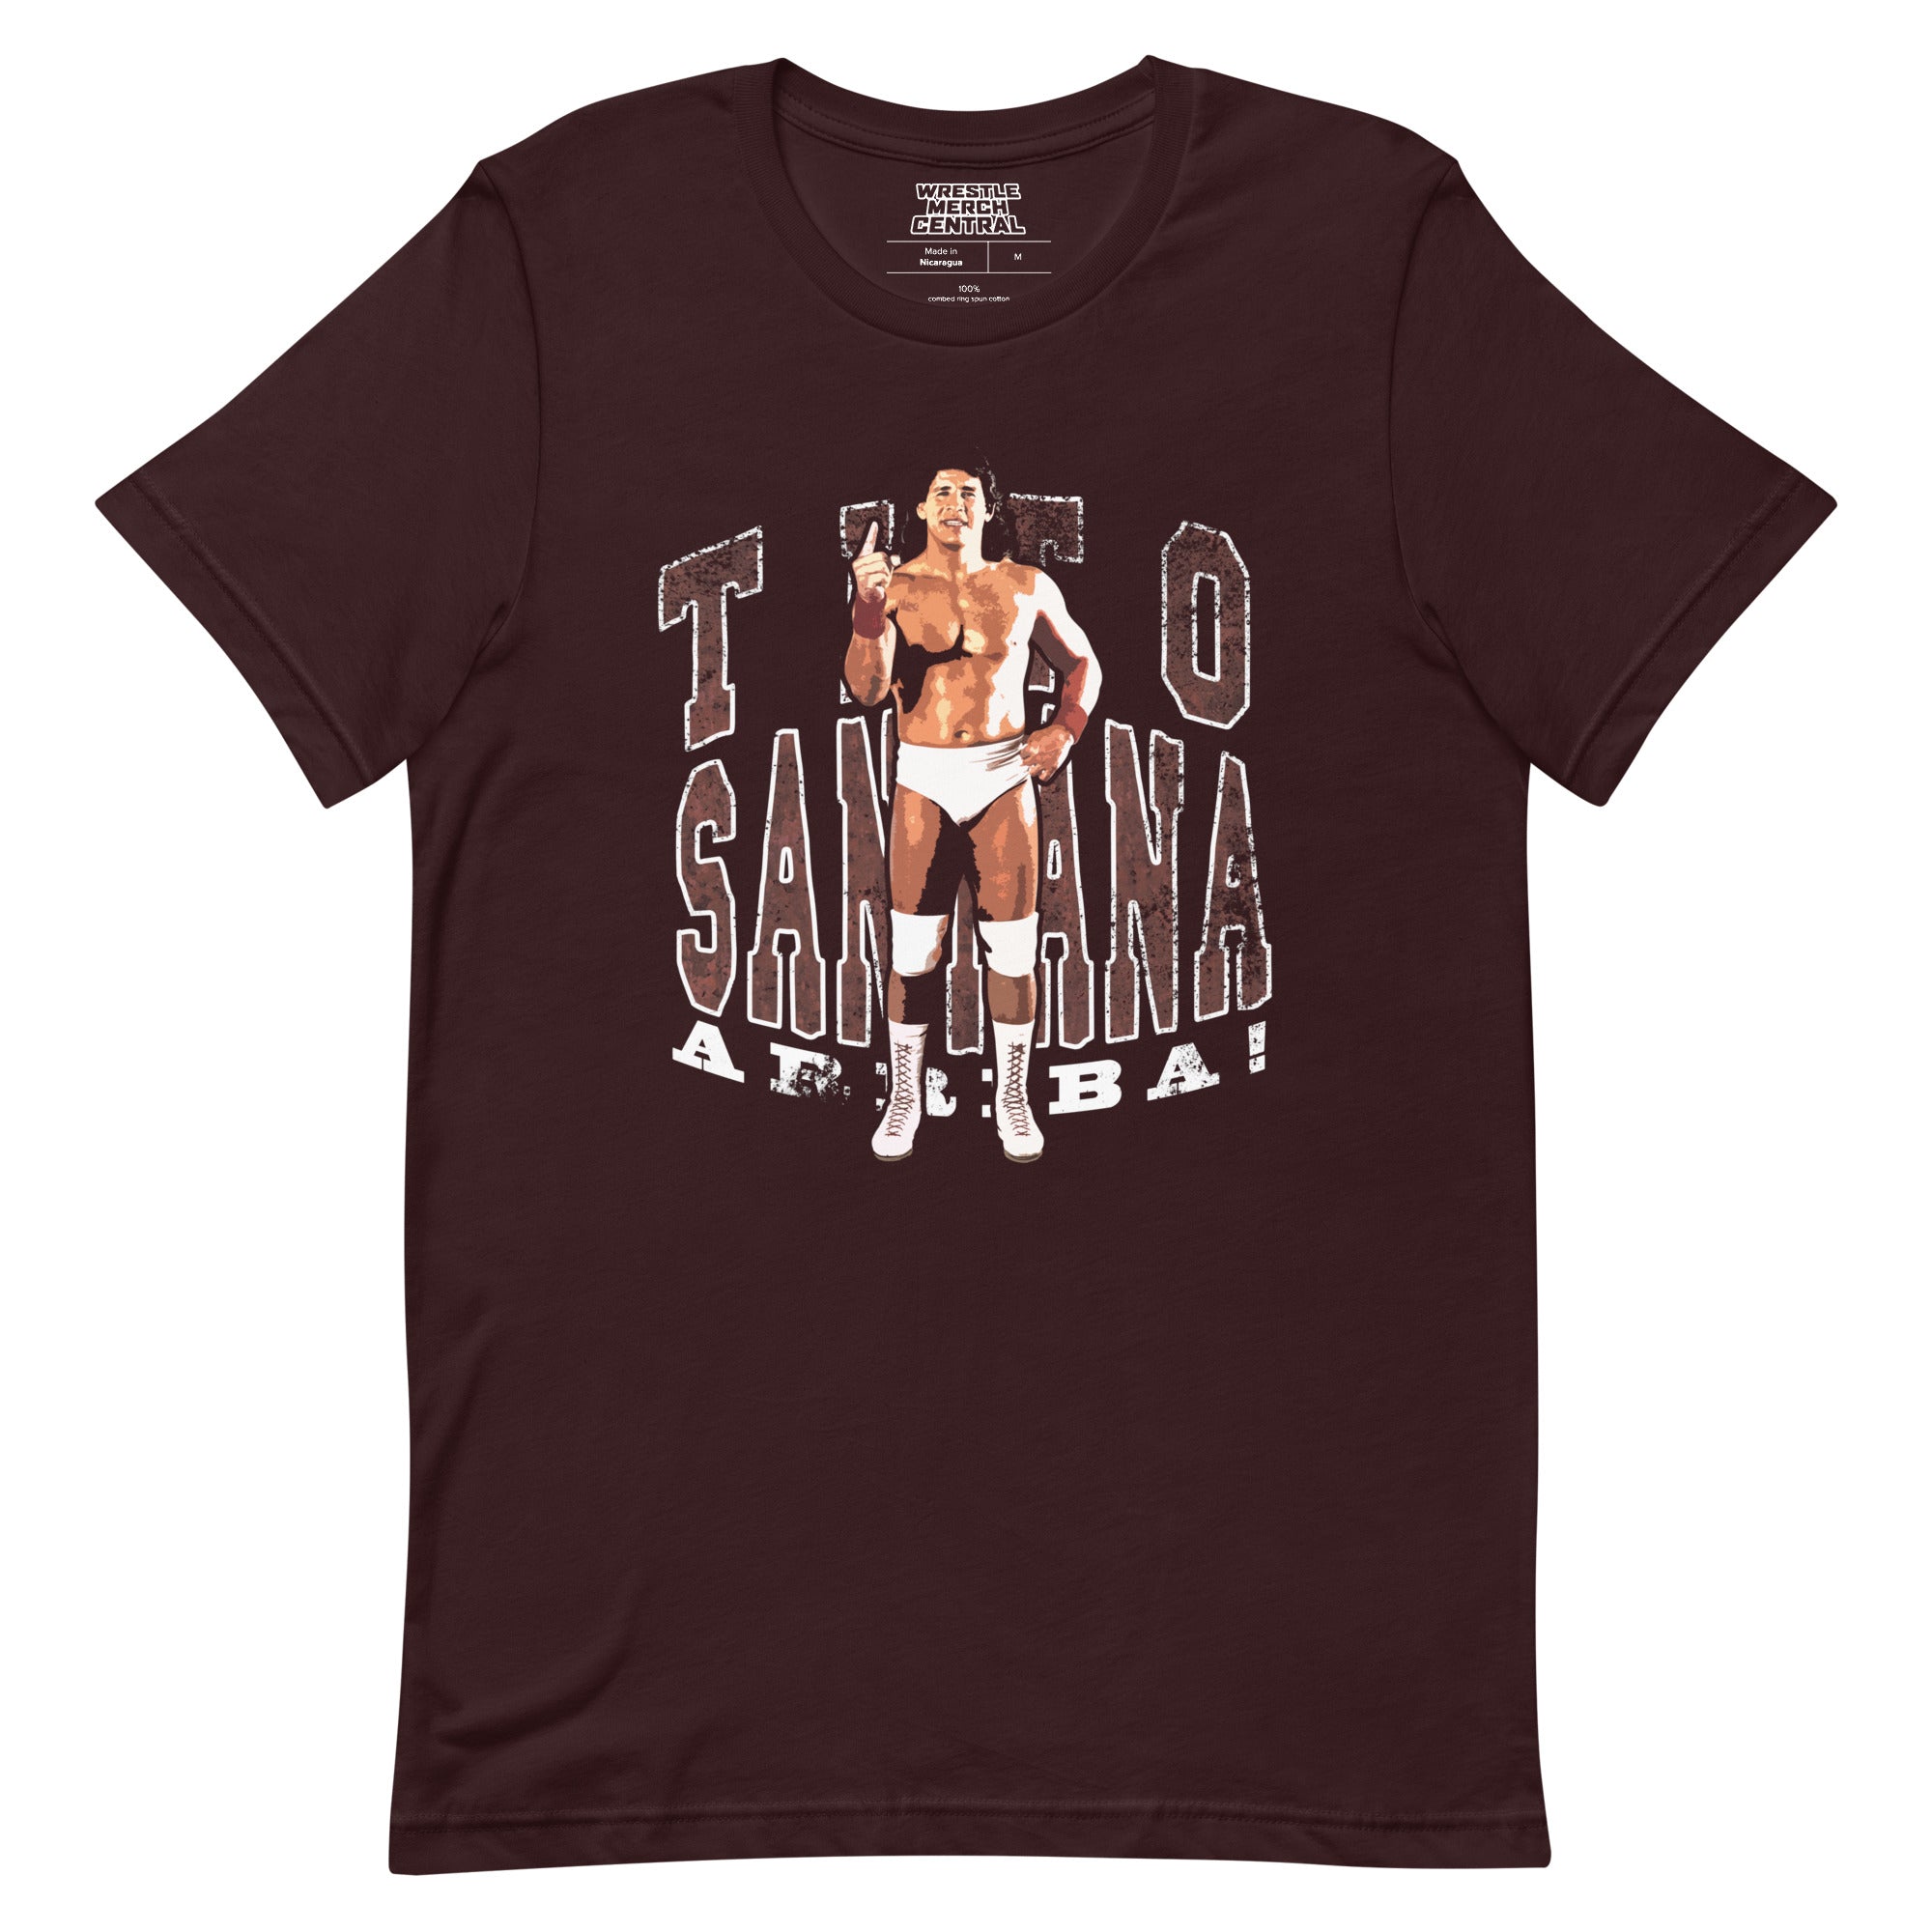 Tito Santana Arriba! Classic Unisex T-Shirt